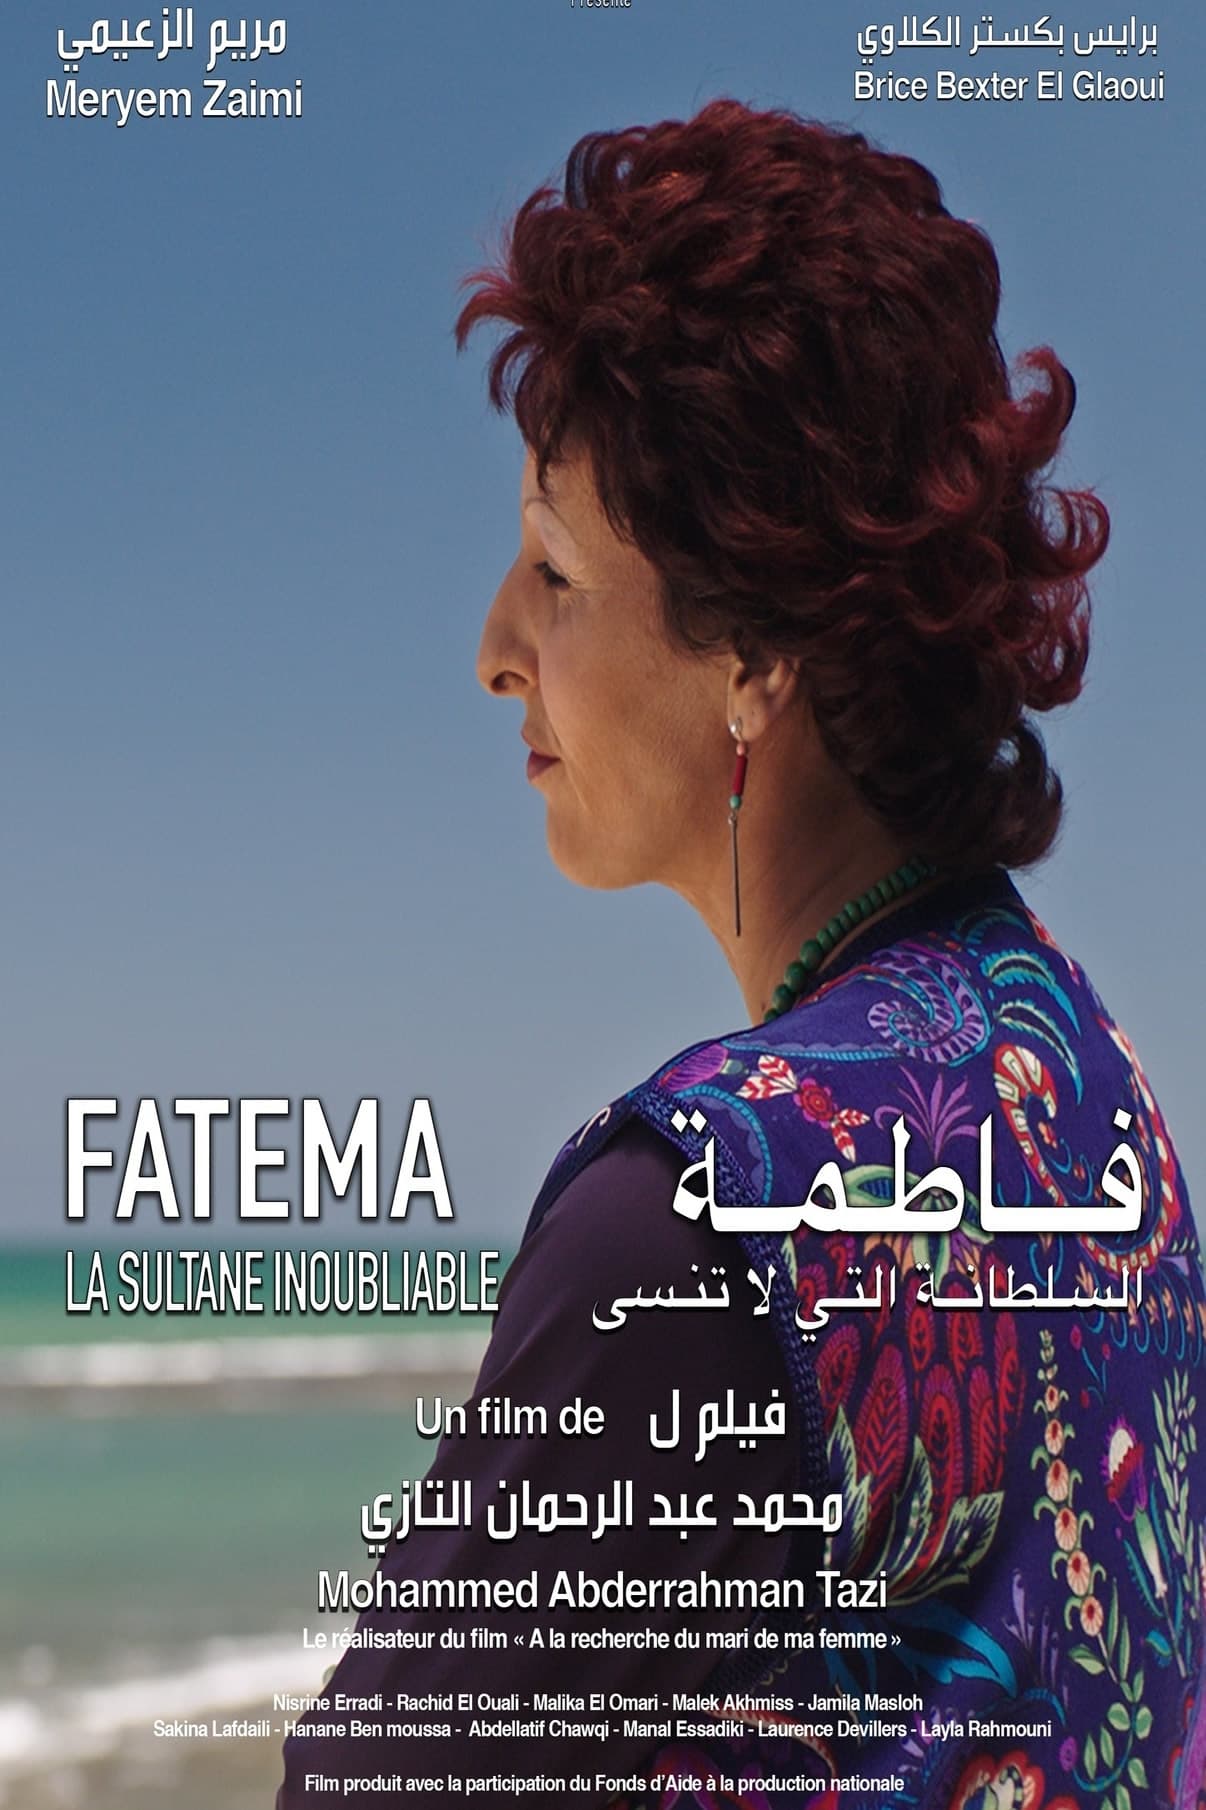 Fatema, La Sultane Inoubliable